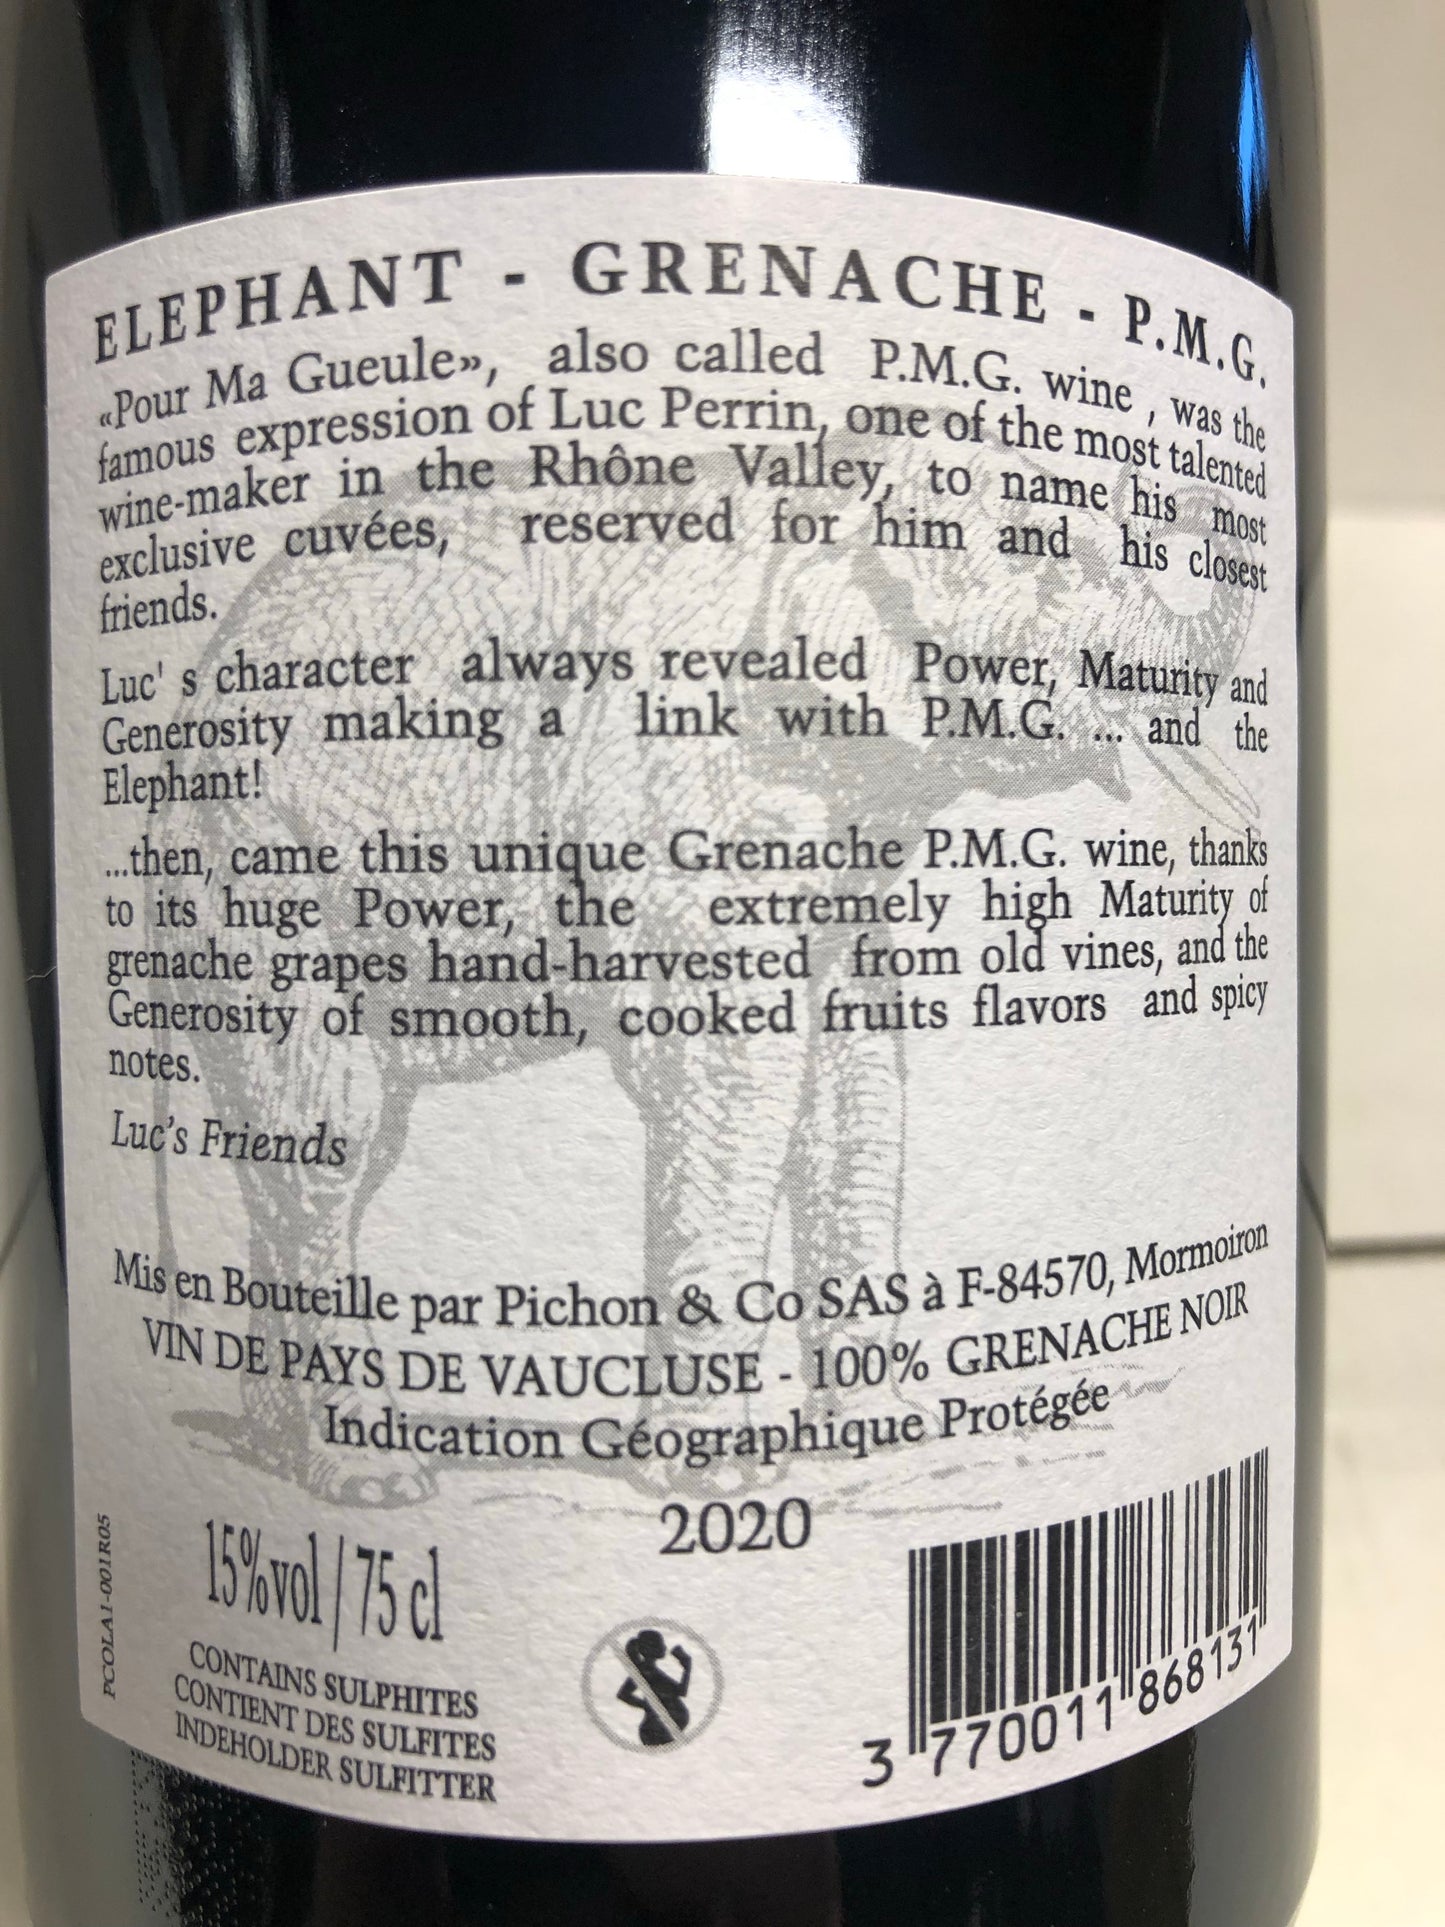 Elephant grenache  2021